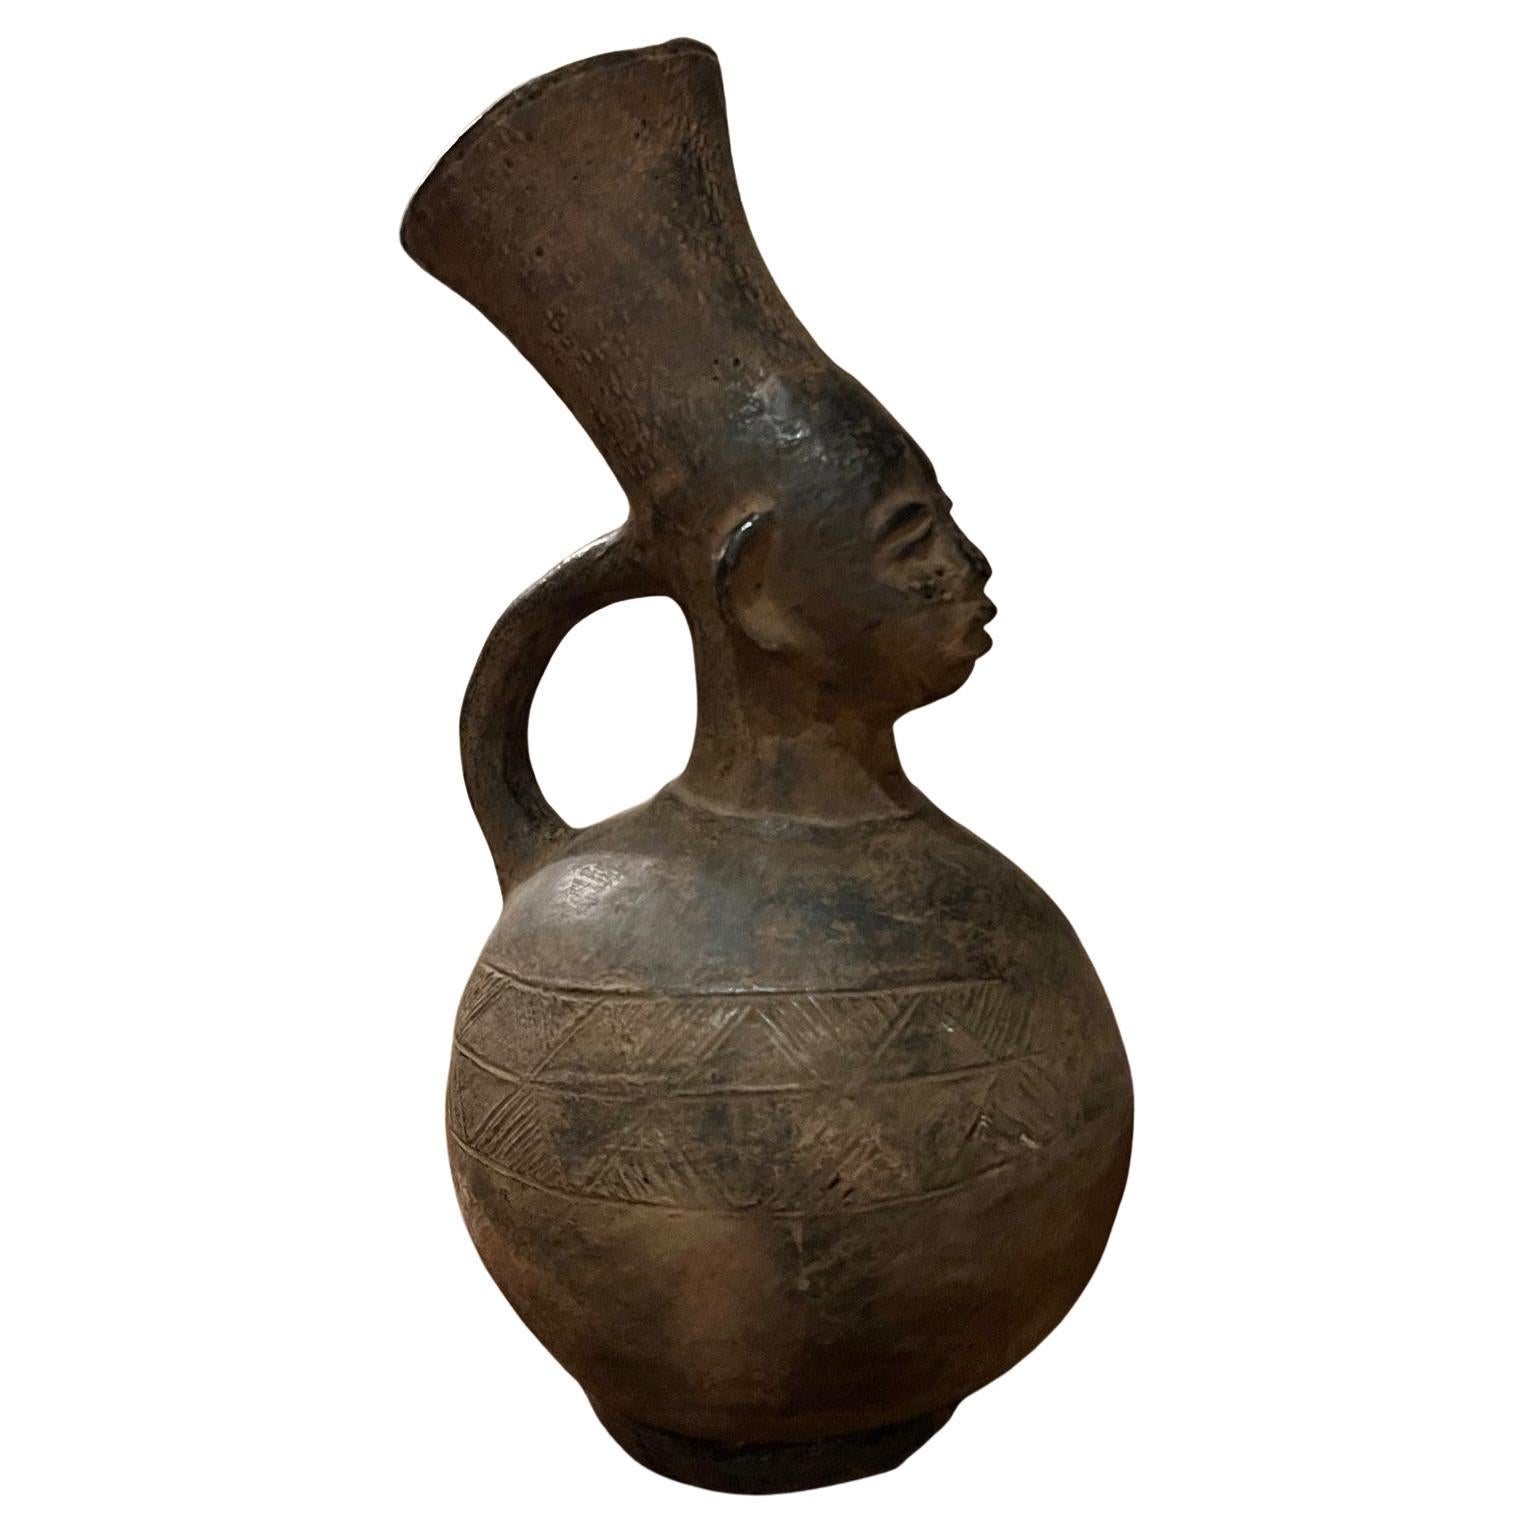 Grand vase antique figuratif africain des peuples Mangbetu anthropomorphes